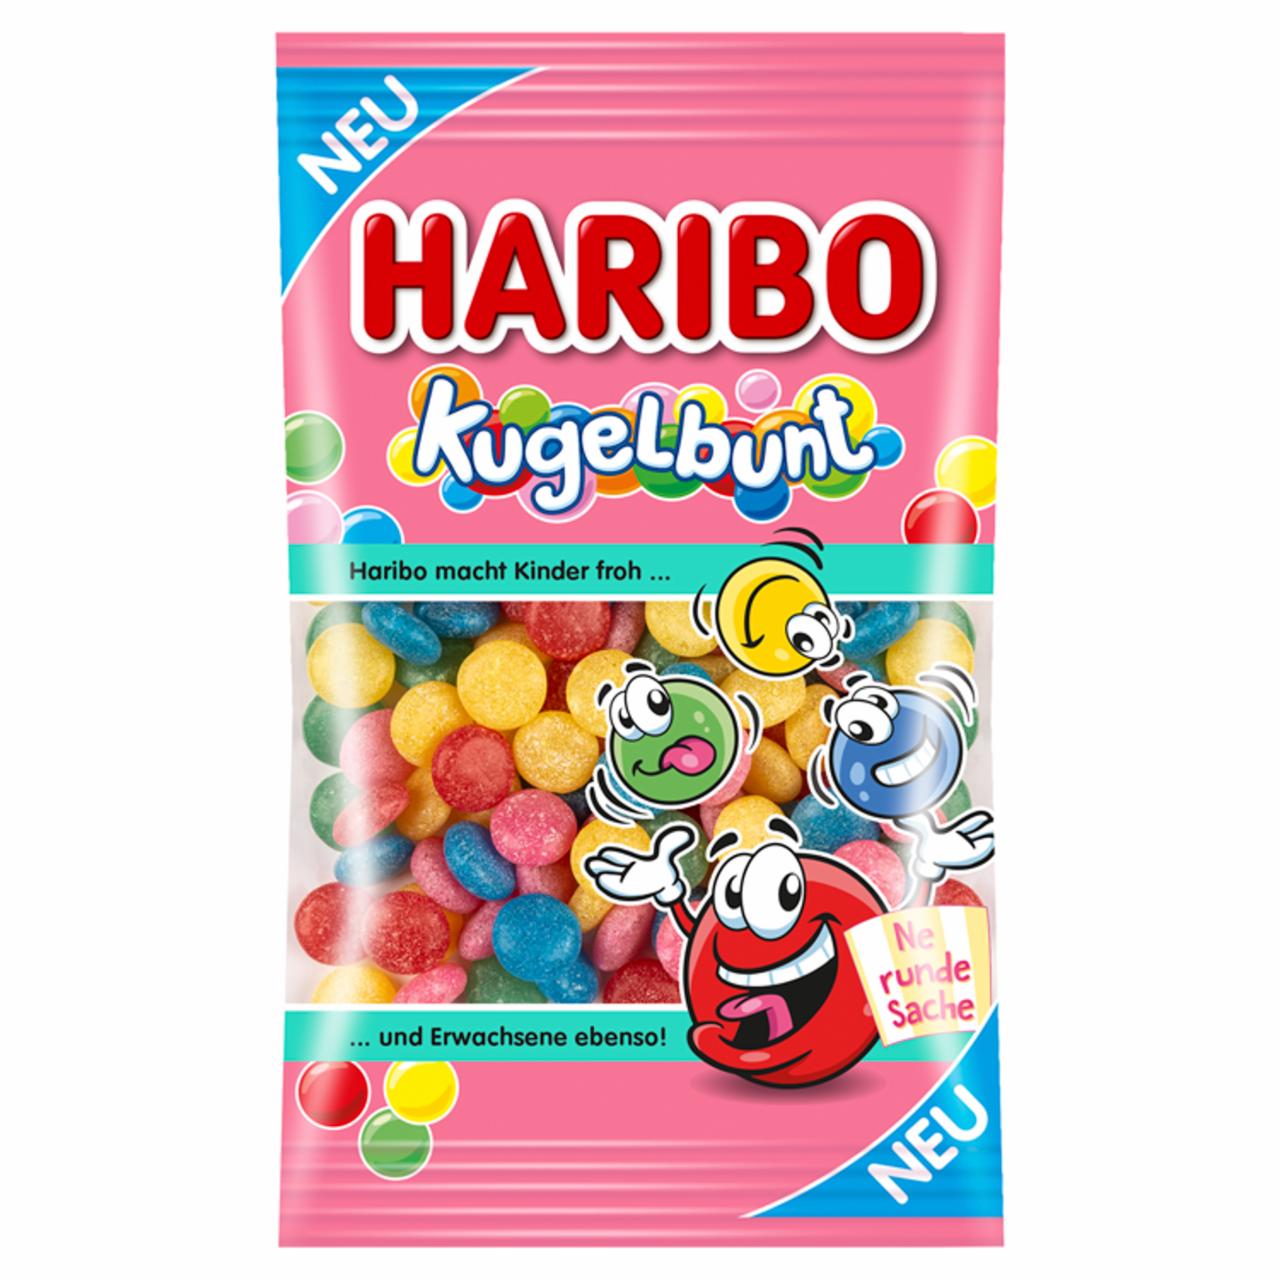 Képek - Haribo Kugelbunt zselés cukordrazsé 90 g